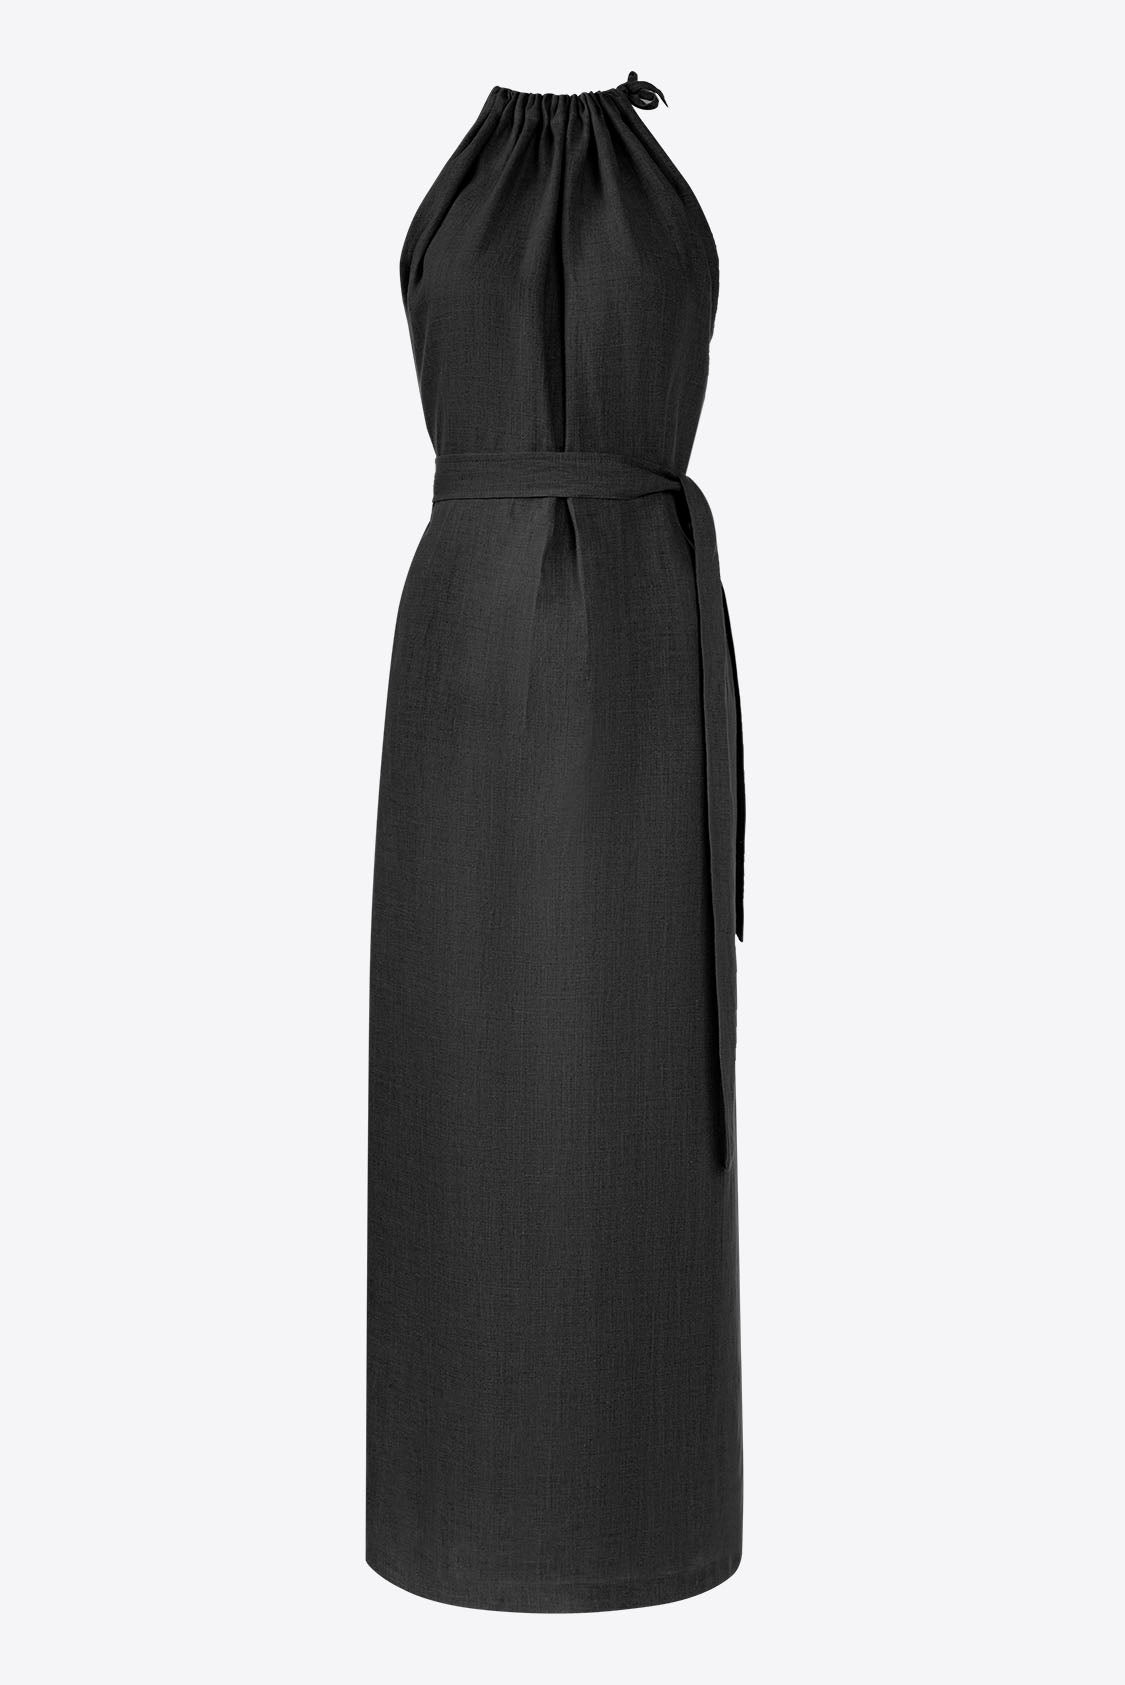 Lniana sukienka maxi elegancka czarna - Amalfi od Holystic.pl